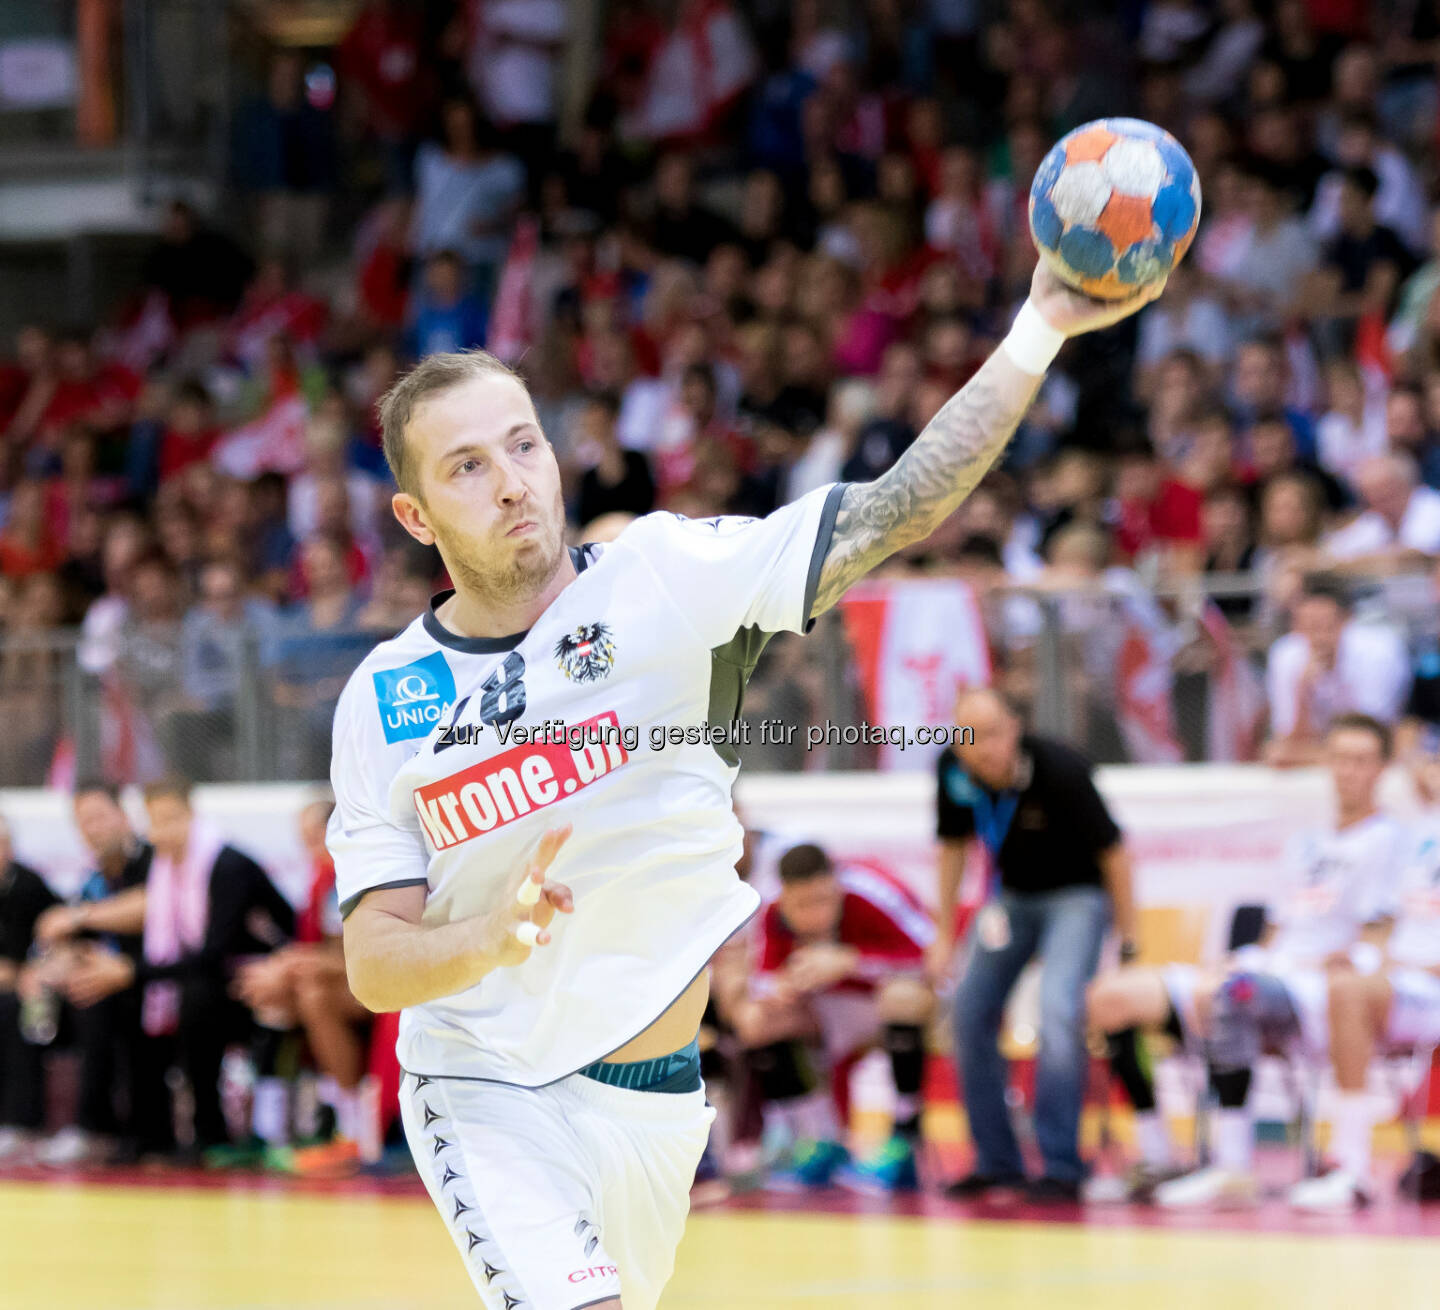 Robert Weber (Handballspieler) : Neuer Partner für ÖHB, ÖEHV und ÖBV : the sportsman vereinbart umfassende Kooperation mit krone.at : Fotocredit: Krone.at/ÖHB/Pucher